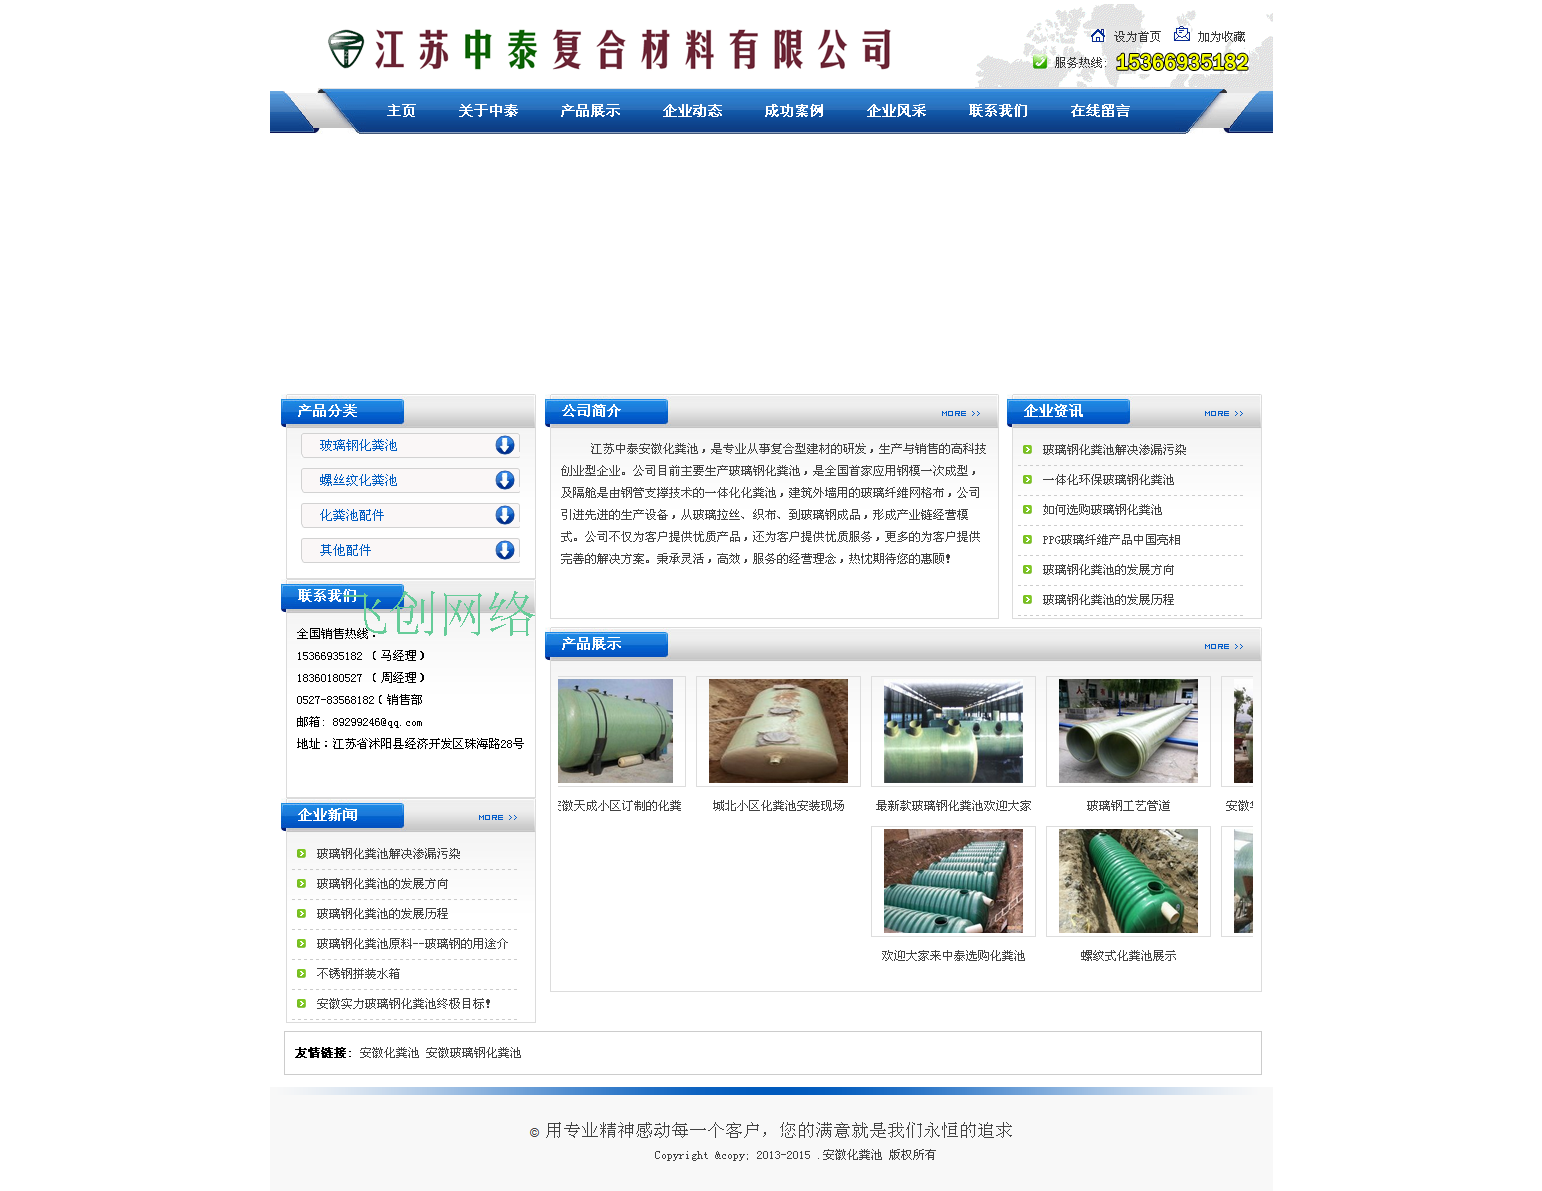 蓝色织梦SEO大气企业网站模板适合企业网站